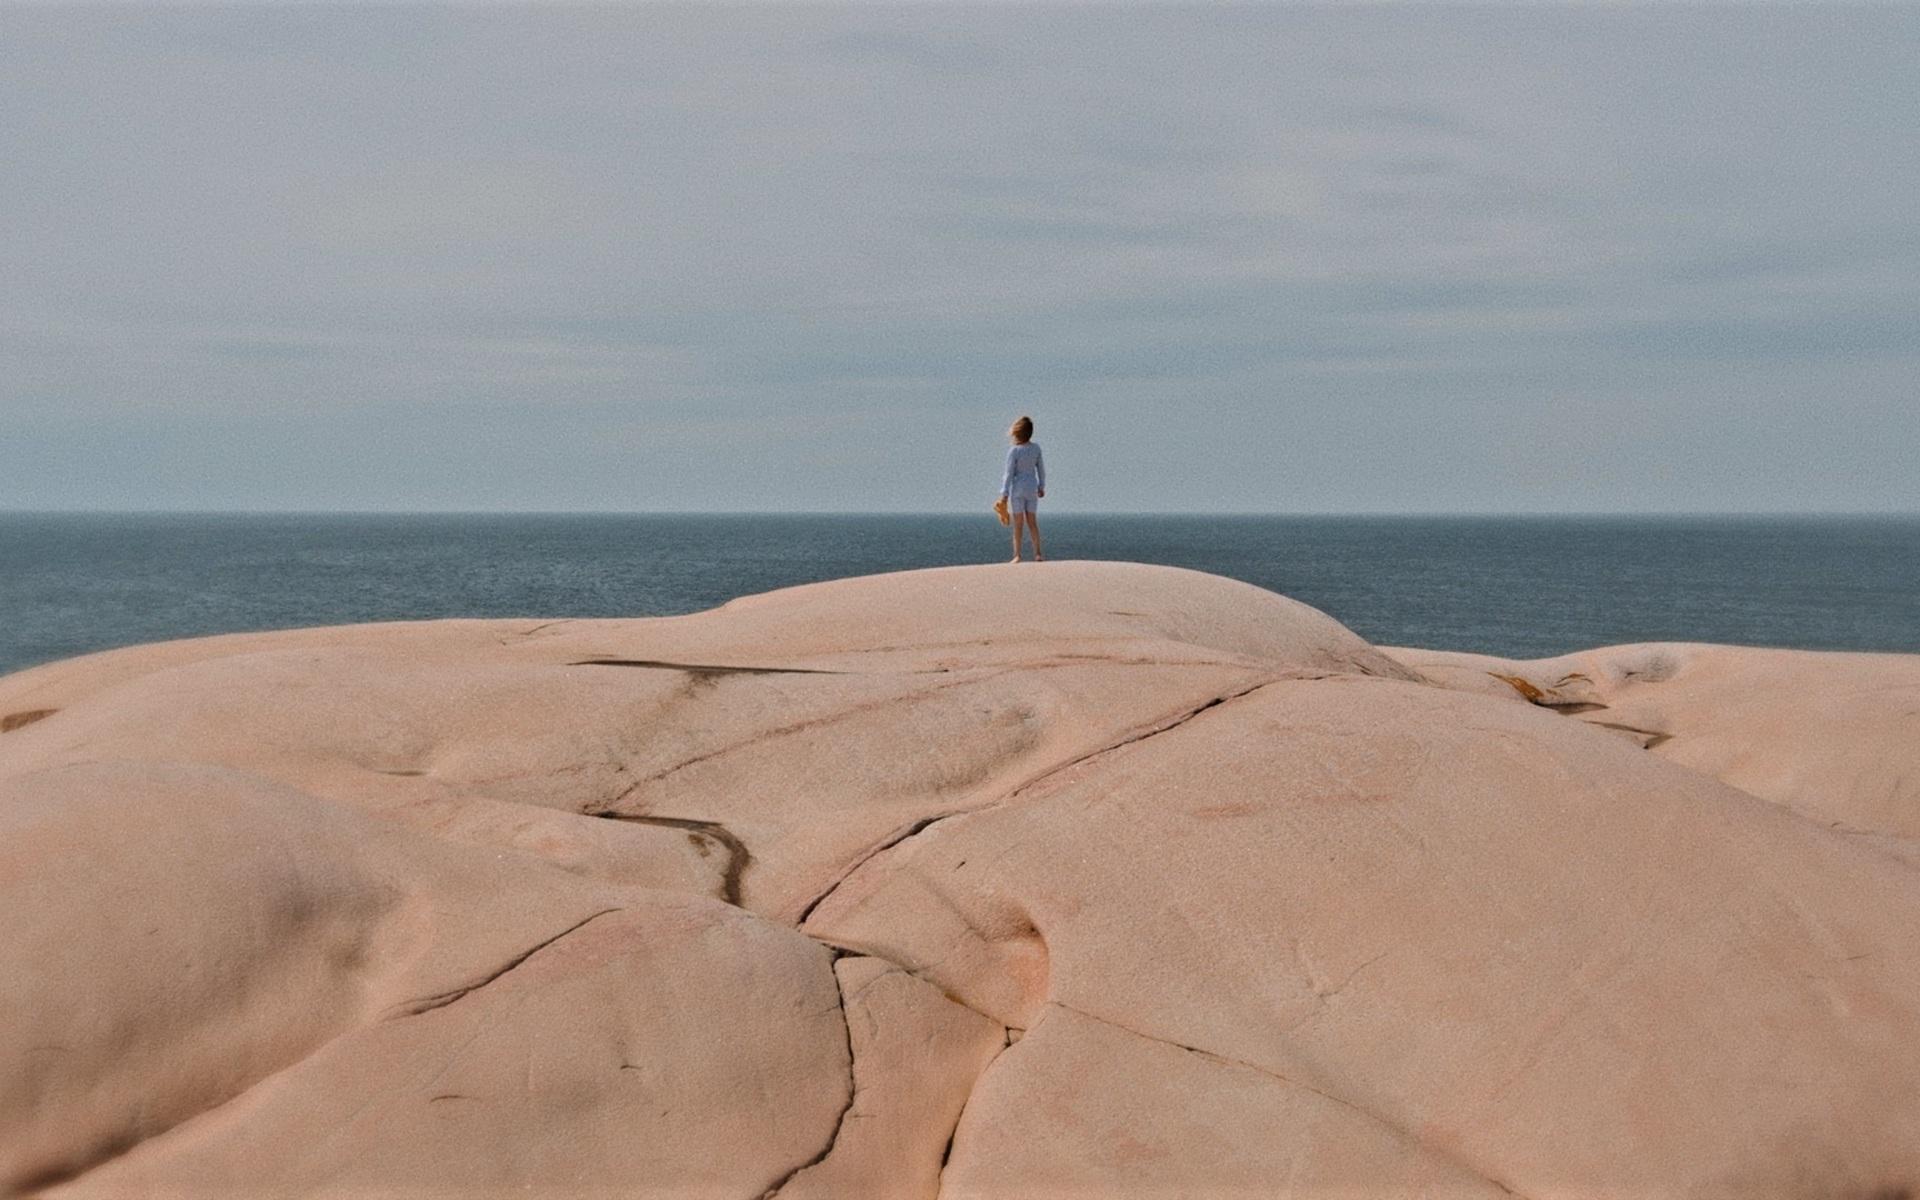 Flickan på bilden, med blicken vänd mot horisonten, heter Thea Ödman Larsson